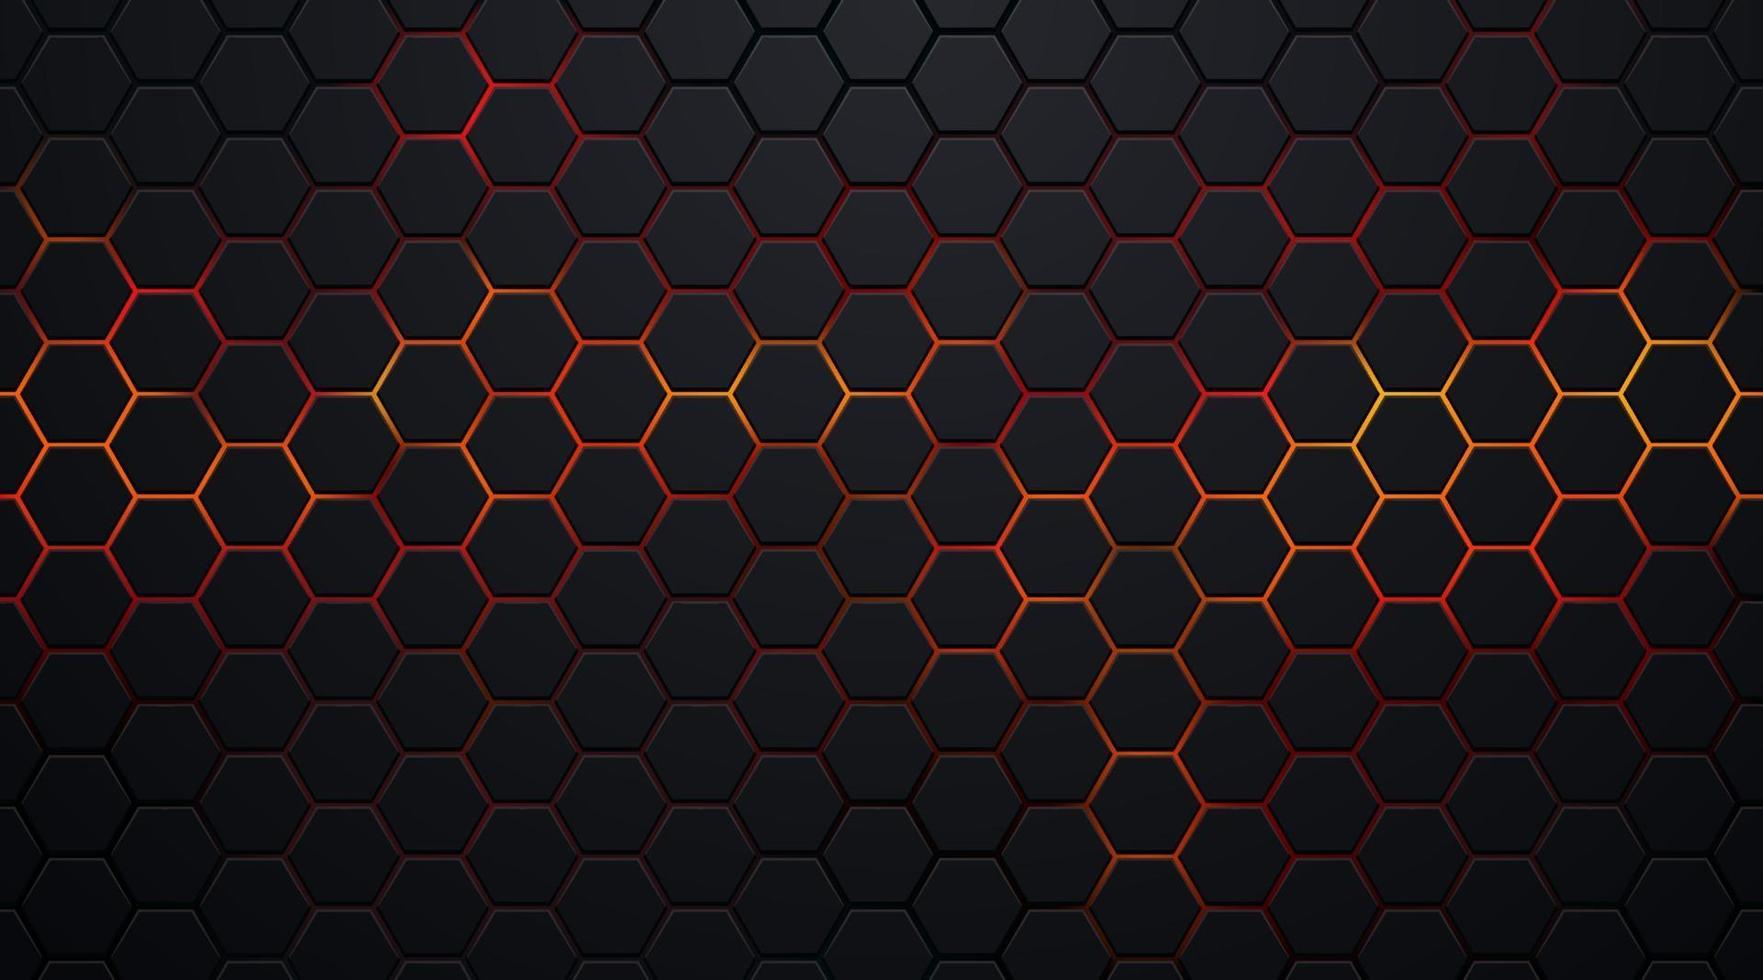 donker zwart zeshoekpatroon op rode, oranje neon abstracte achtergrond in technologiestijl. moderne futuristische geometrische vorm webbannerontwerp. u kunt gebruiken voor voorbladsjabloon, poster. vector illustratie